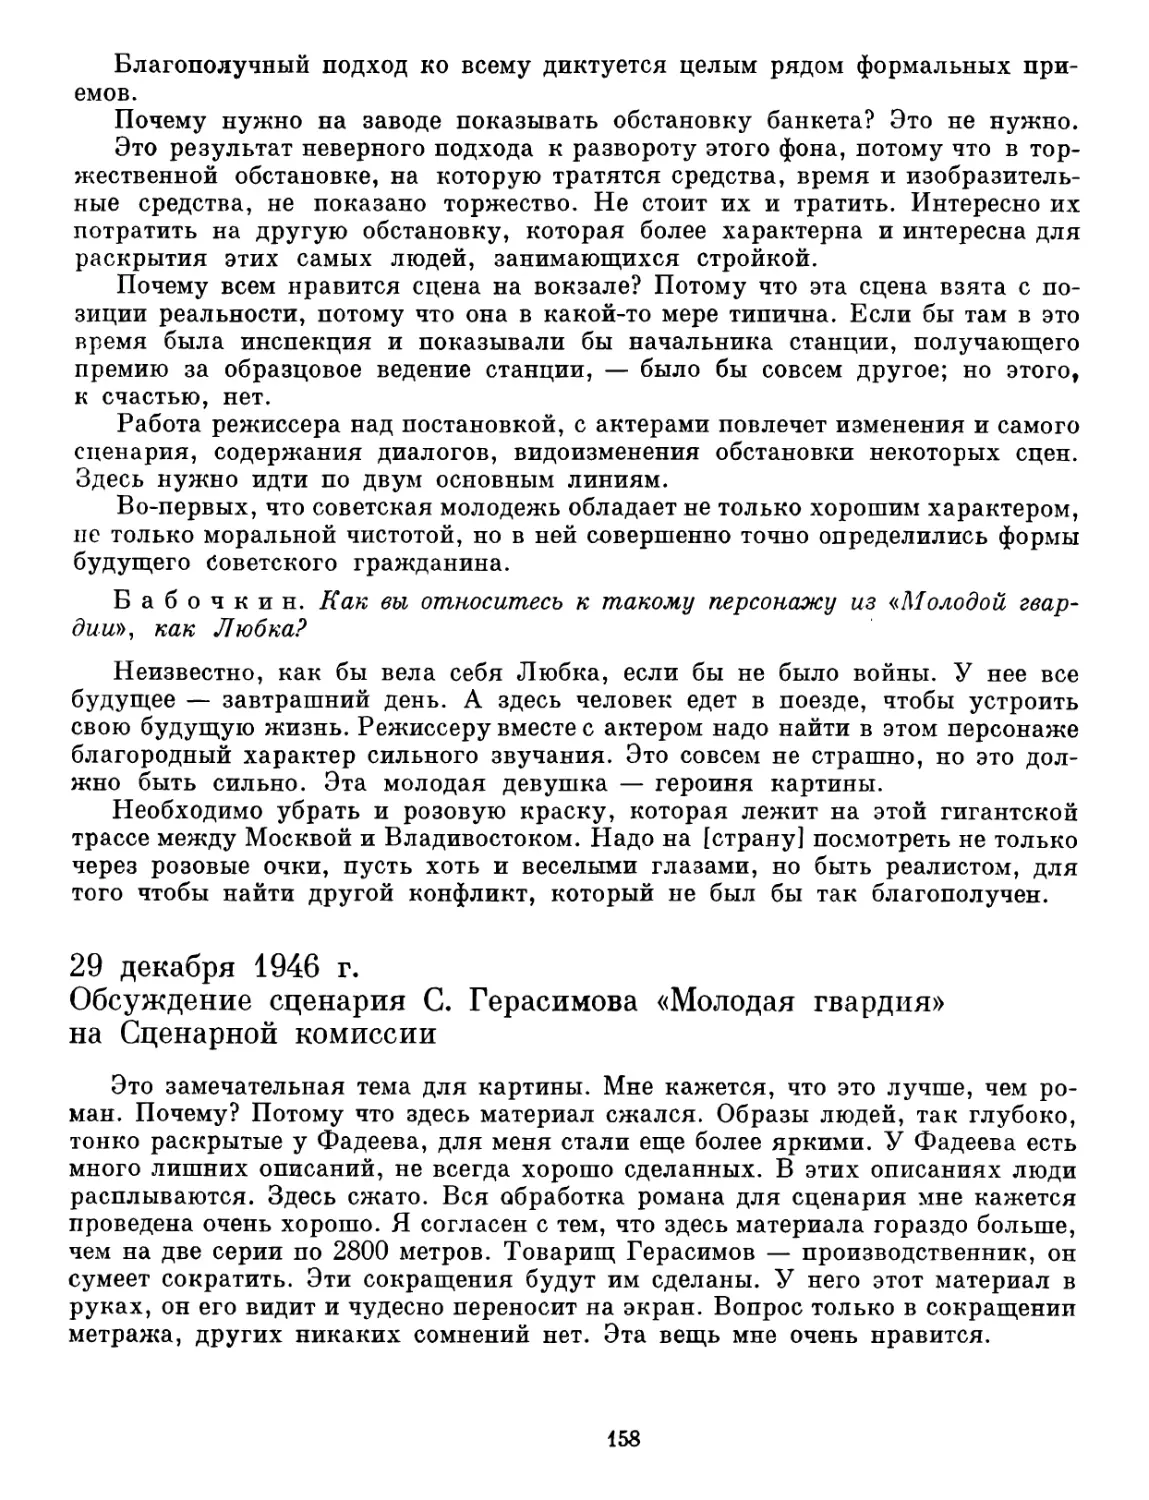 29 декабря 1946 г. Обсуждение сценария С. Герасимова «Молодая гвардия» на Сценарной комиссии